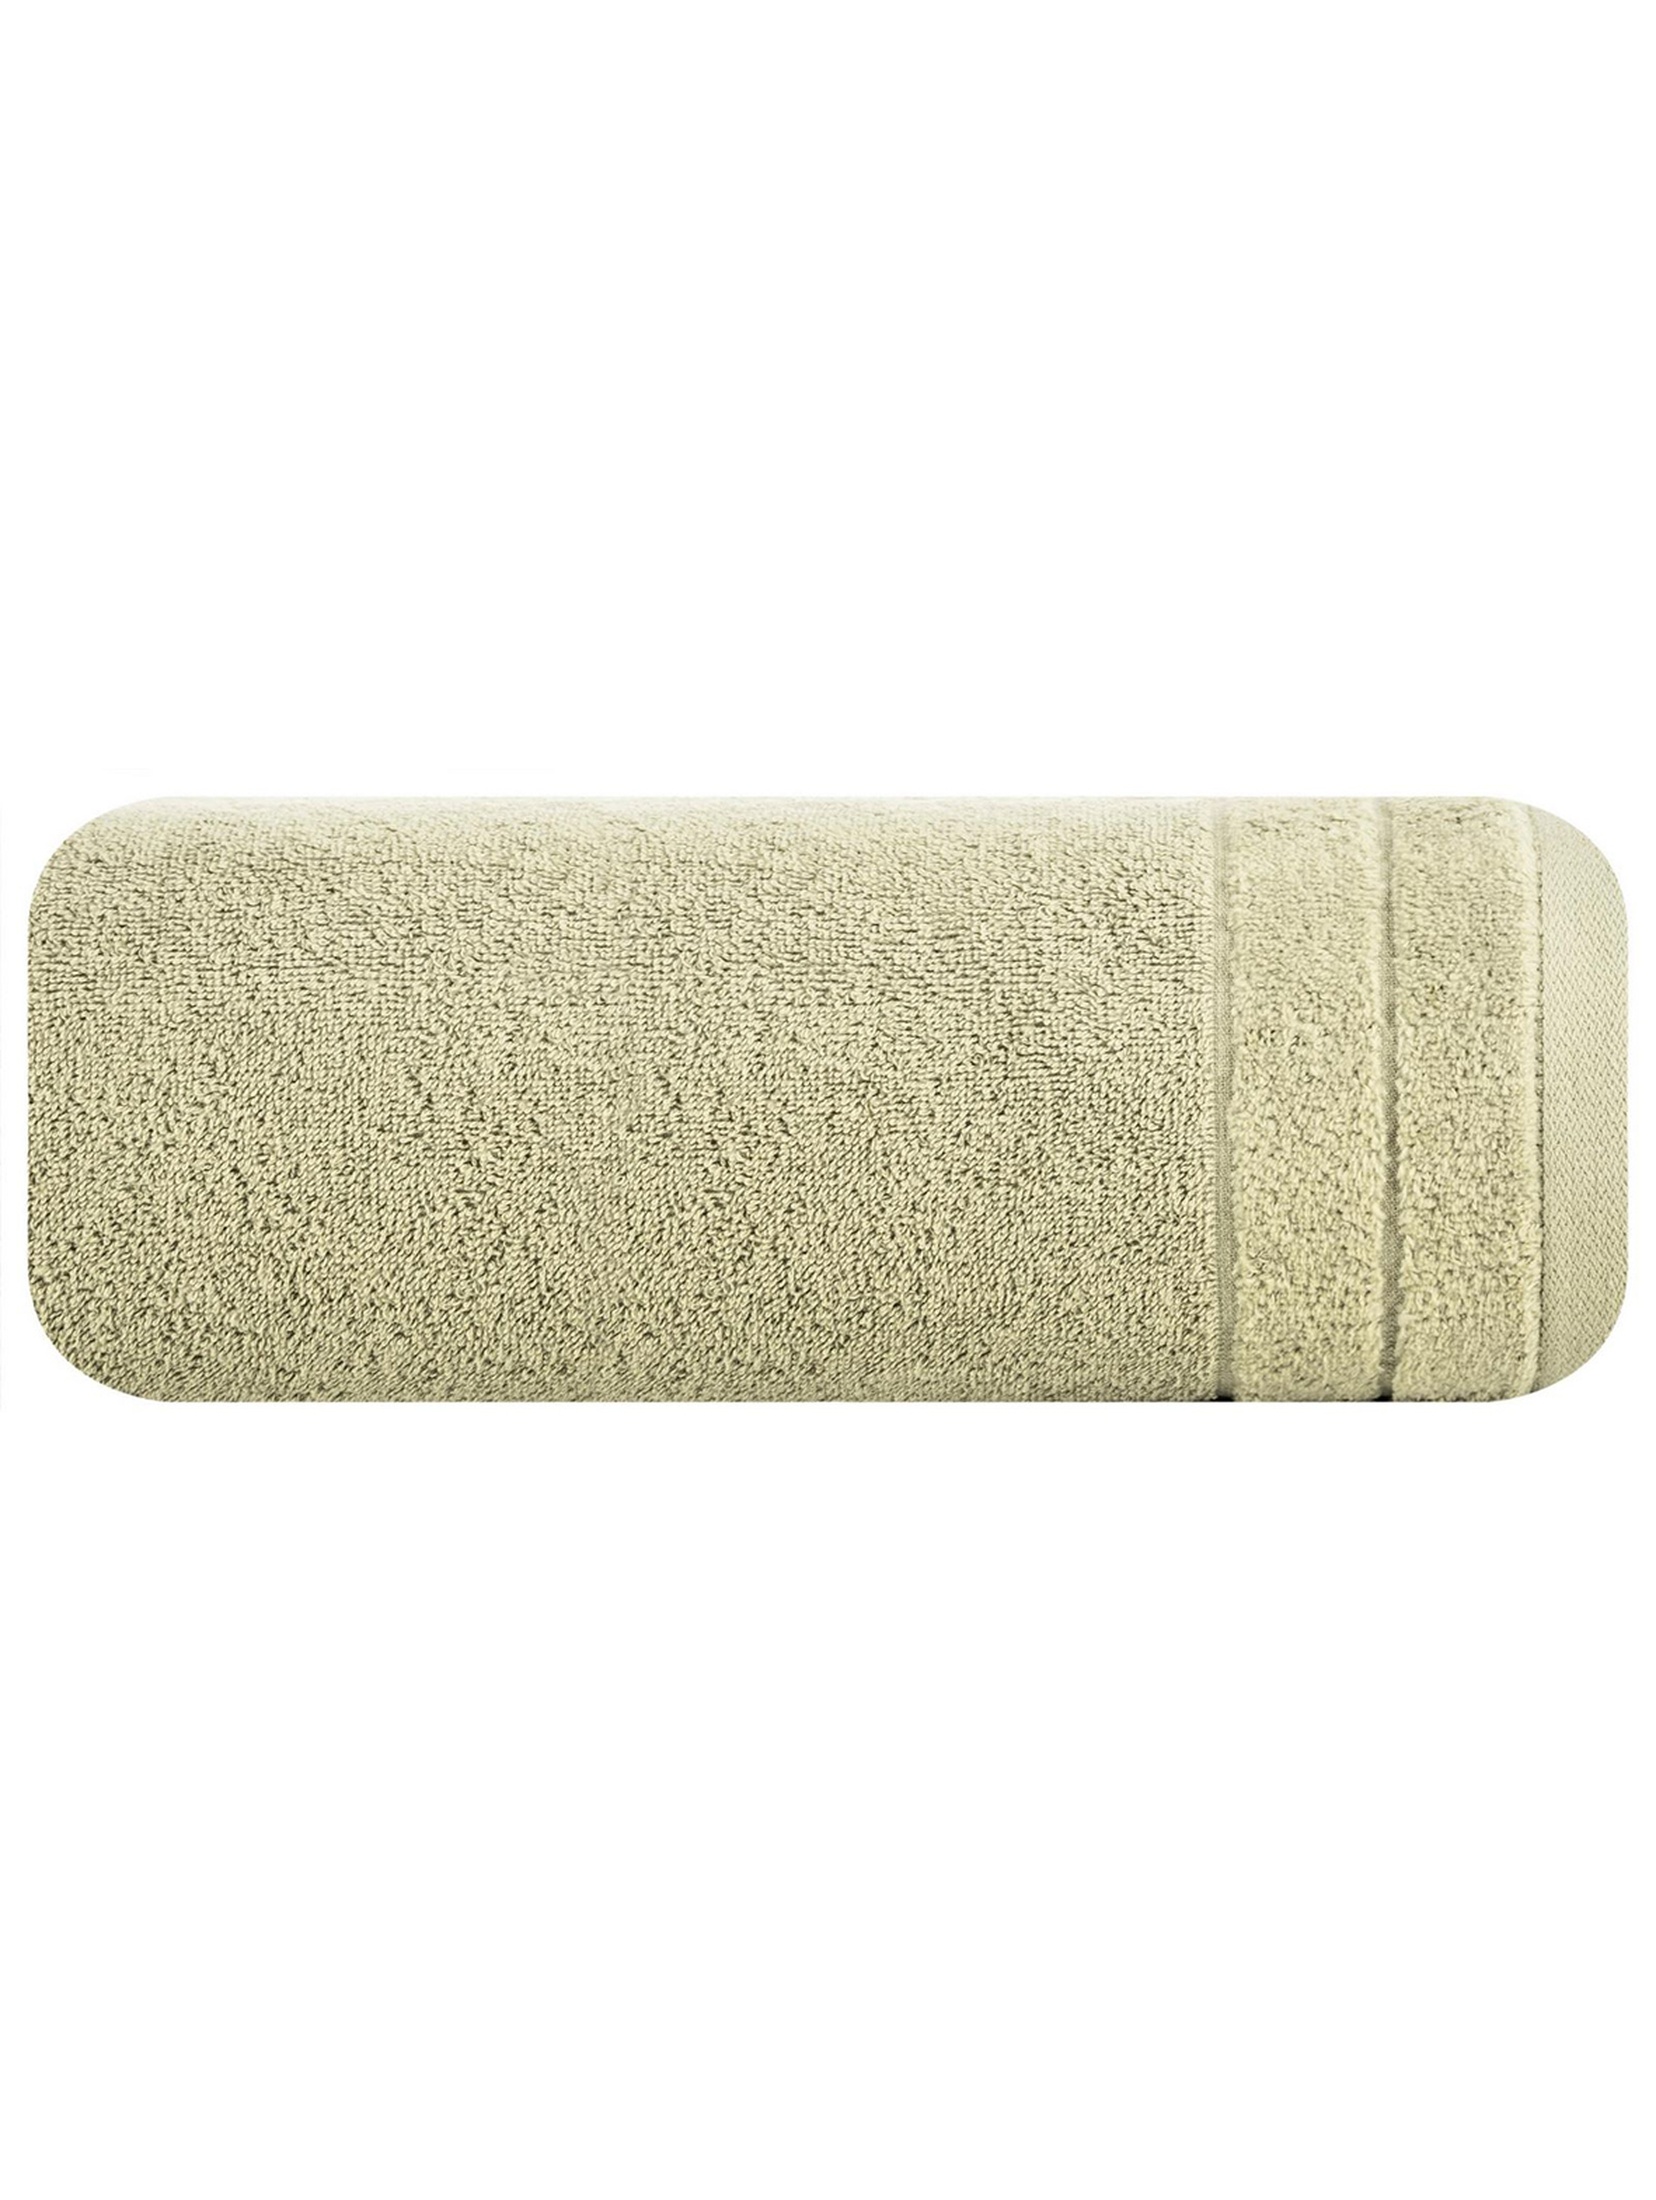 Ręcznik Damla 50x90 cm - beżowy